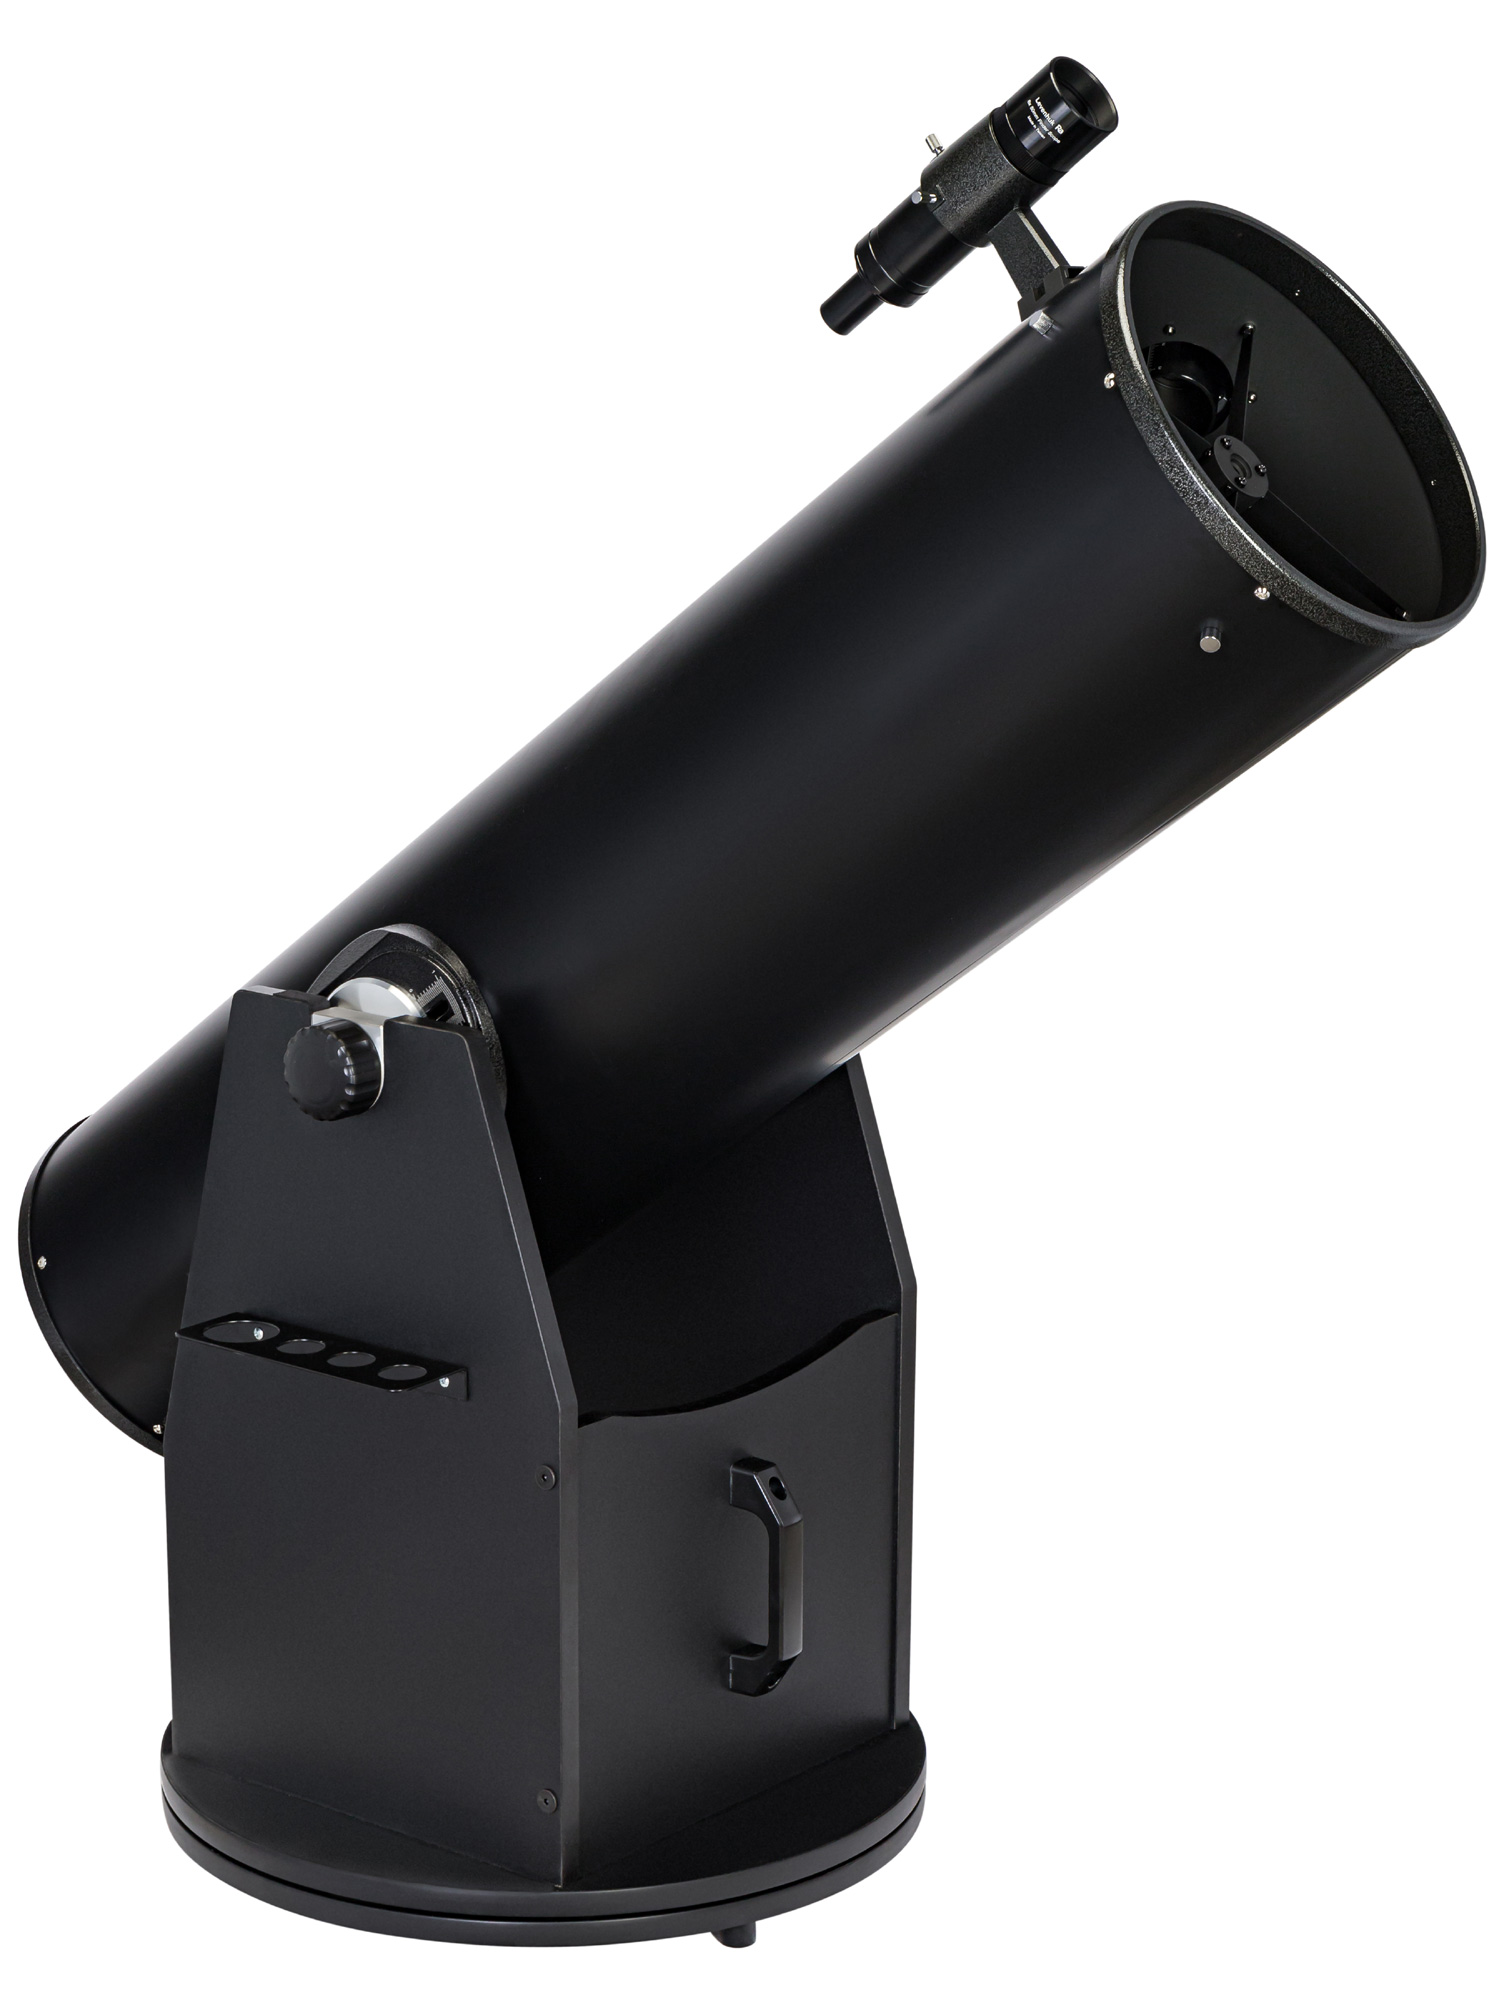 Телескоп Добсона Levenhuk Ra 250N Dob купить по оптимальной цене,  доставка по России, гарантия качества